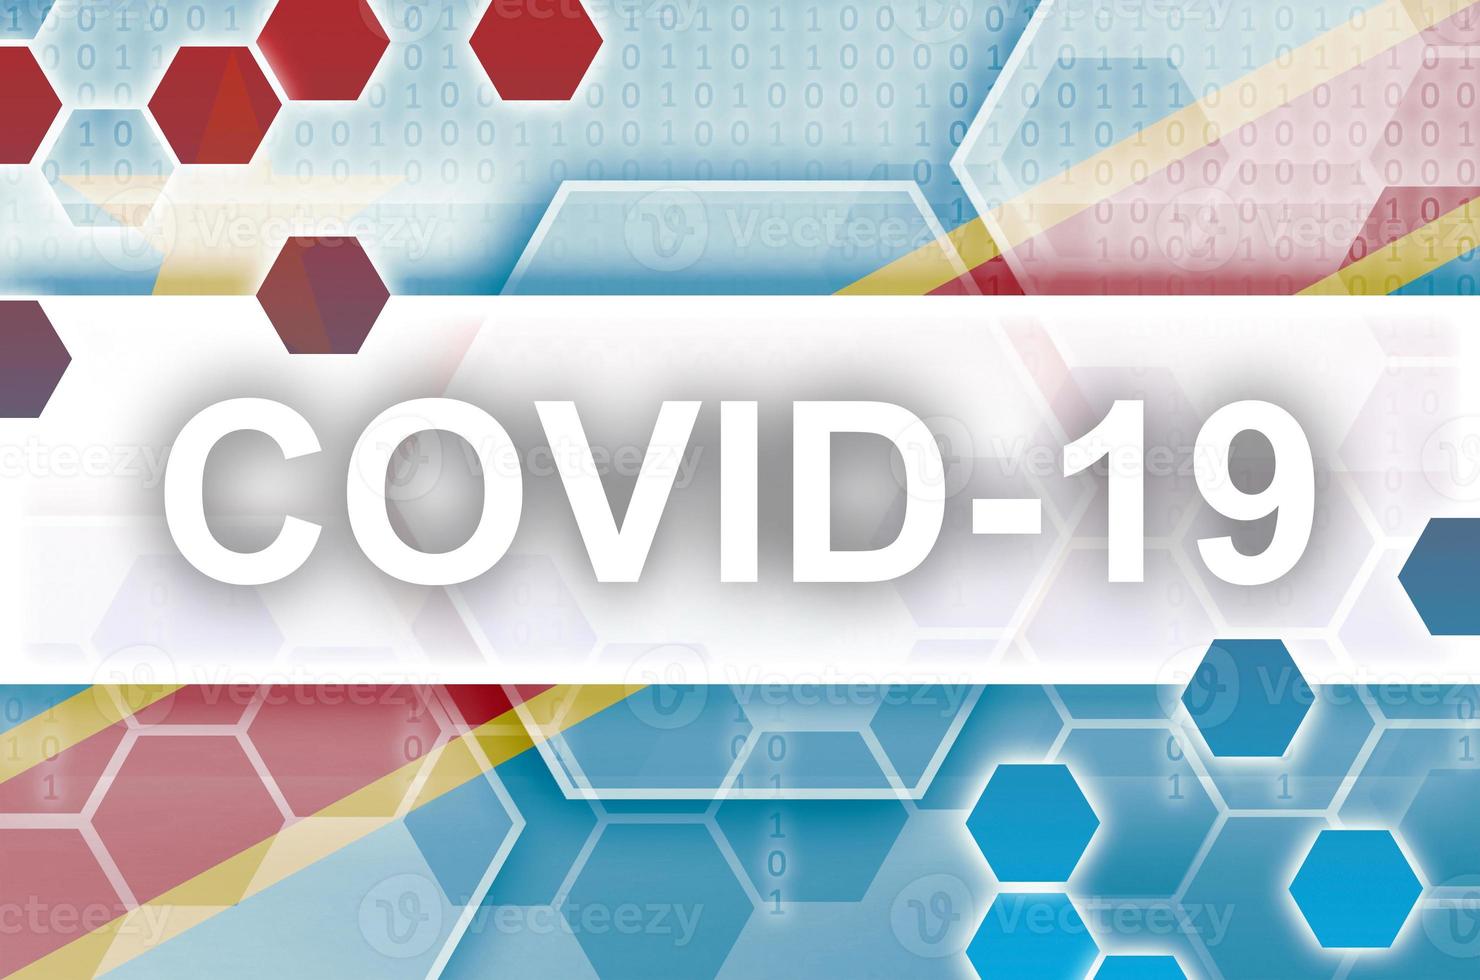 drapeau de la république démocratique du congo et composition abstraite numérique futuriste avec inscription covid-19. concept d'épidémie de coronavirus photo